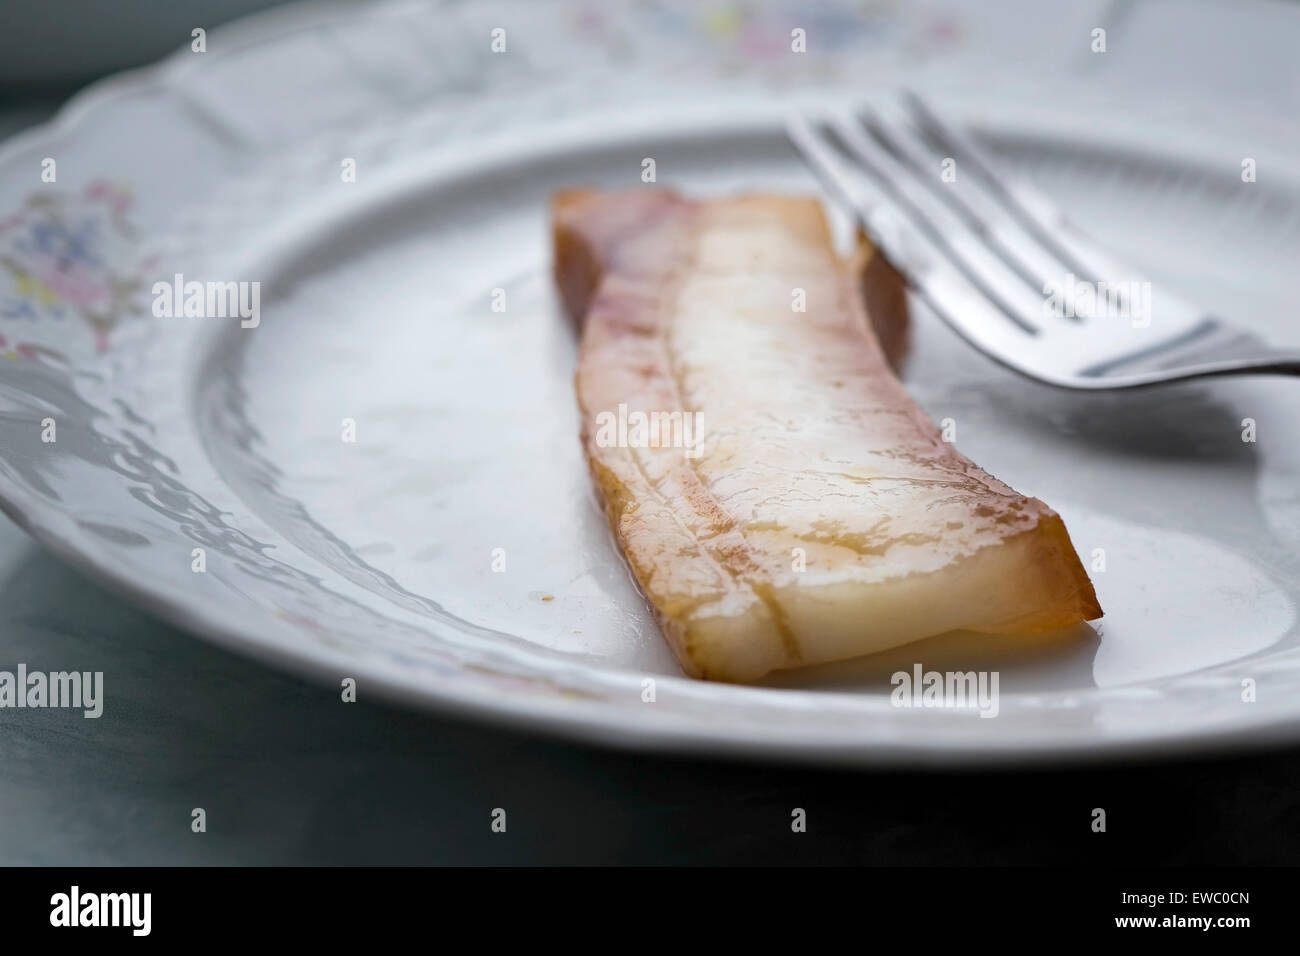 Un morceau de bacon grillé sur une assiette avec une fourchette Banque D'Images